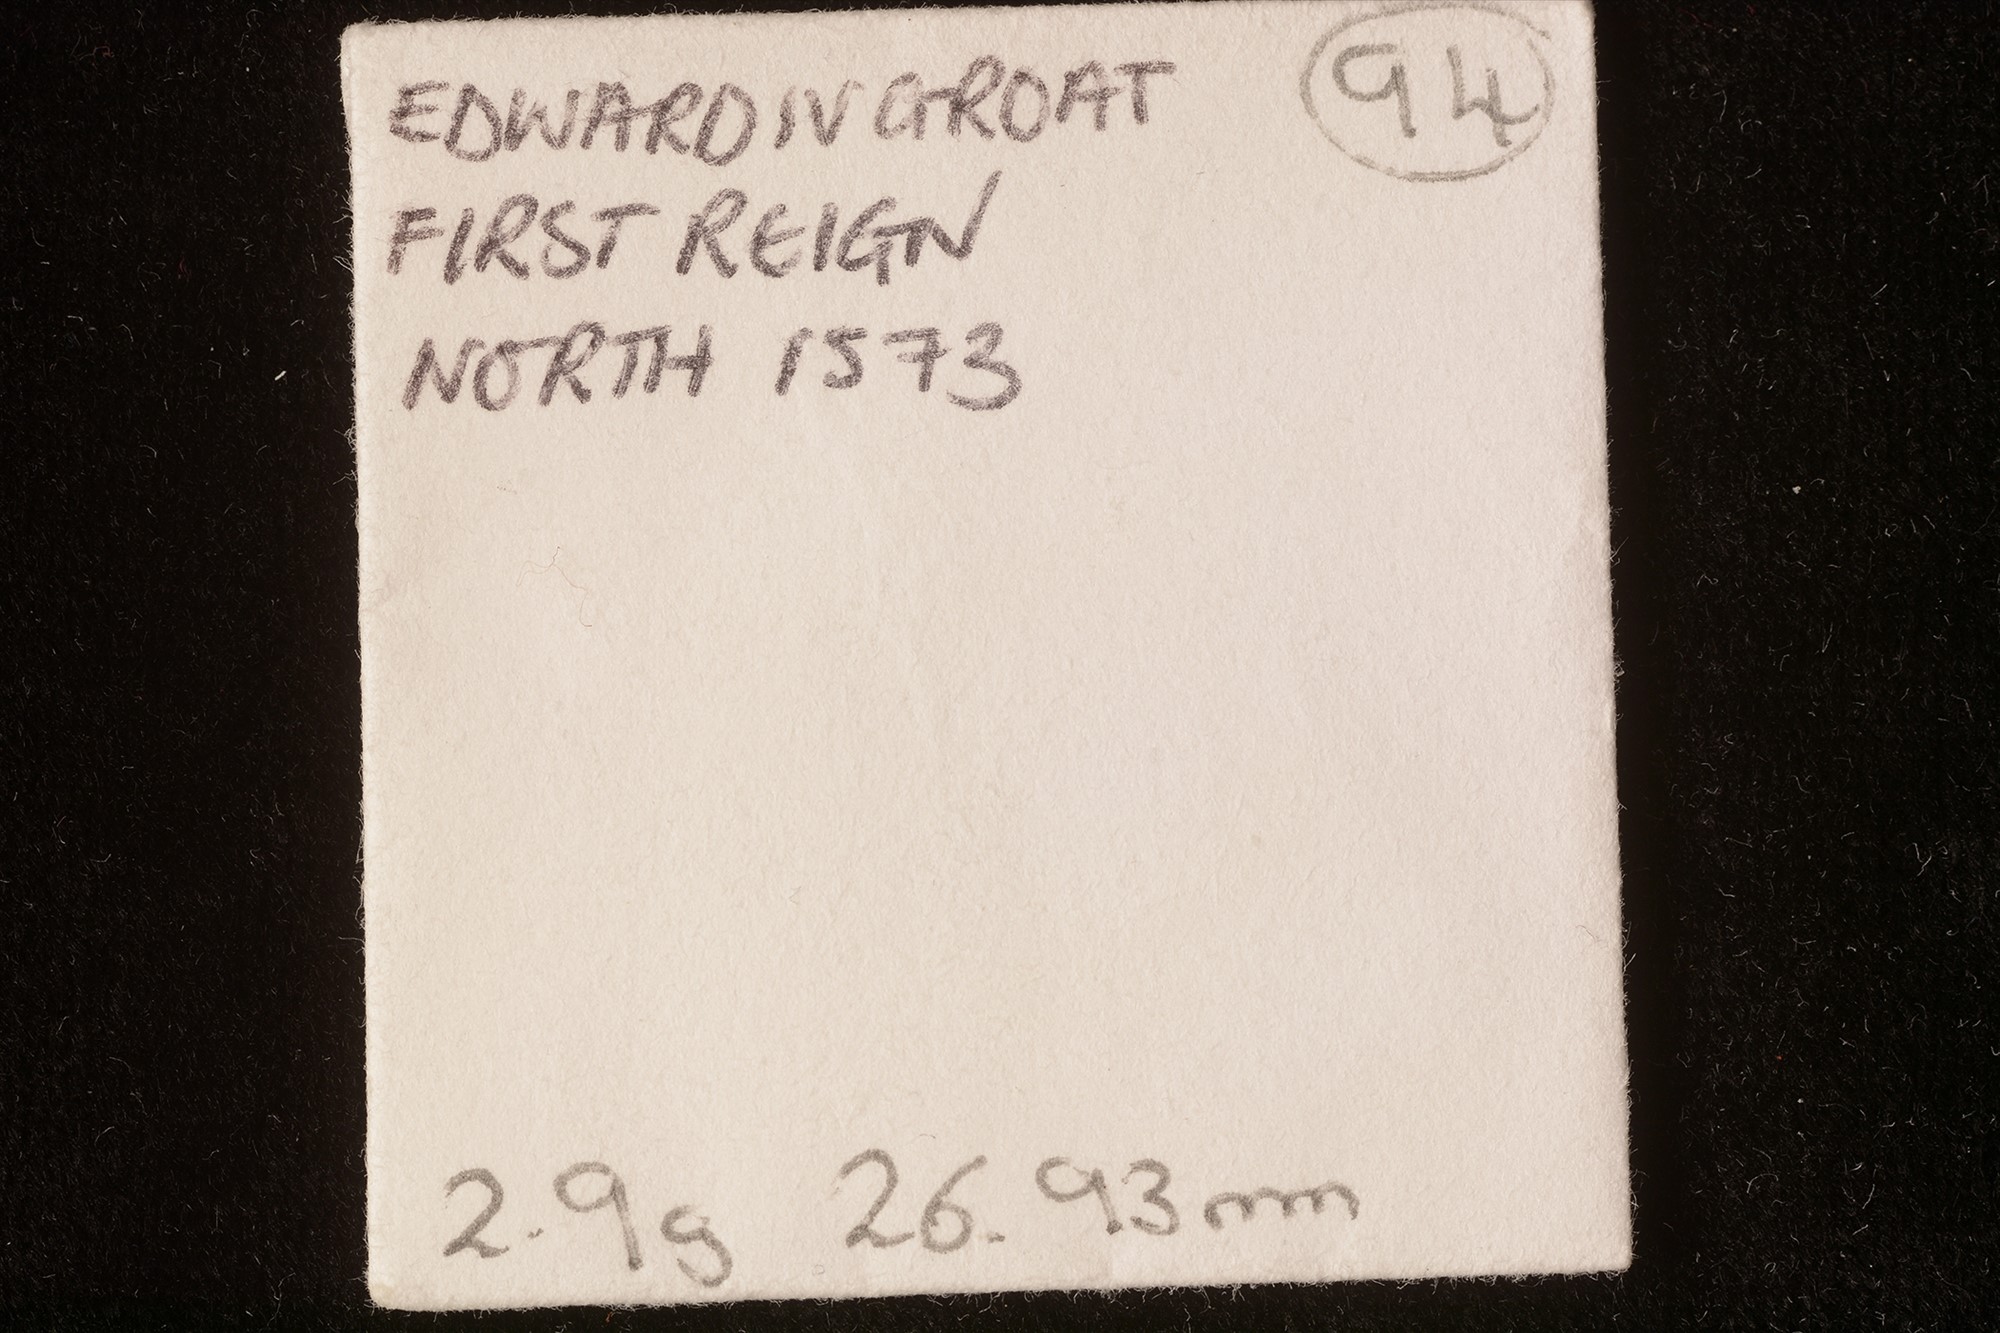 Edward IV groat - Image 2 of 3